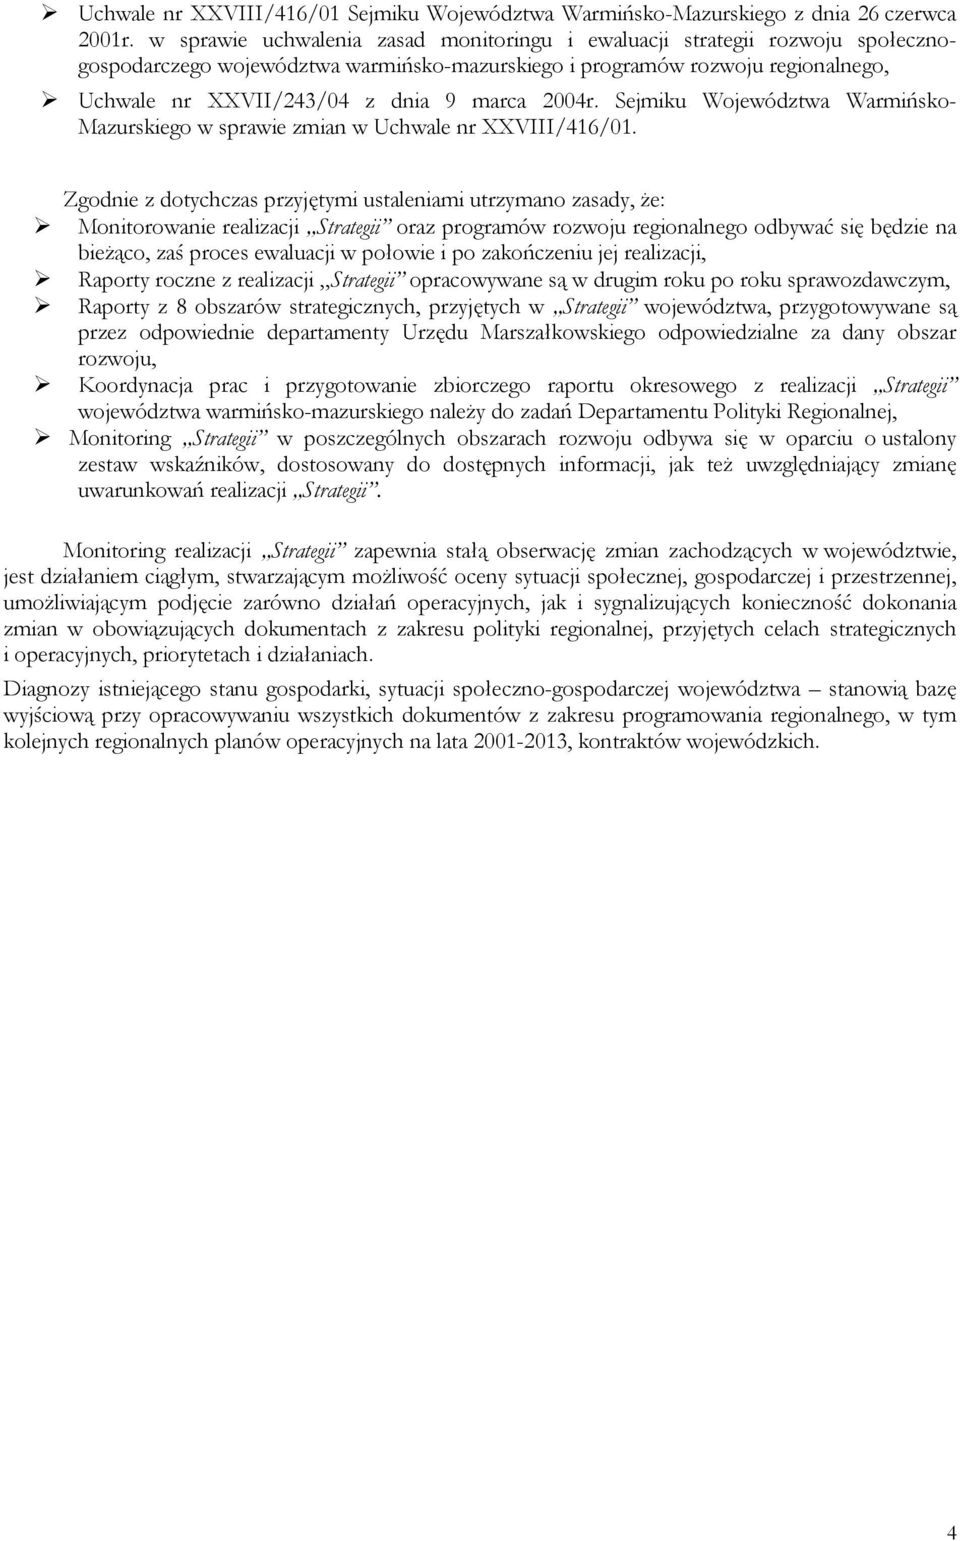 2004r. Sejmiku Województwa Warmińsko- Mazurskiego w sprawie zmian w Uchwale nr XXVIII/416/01.